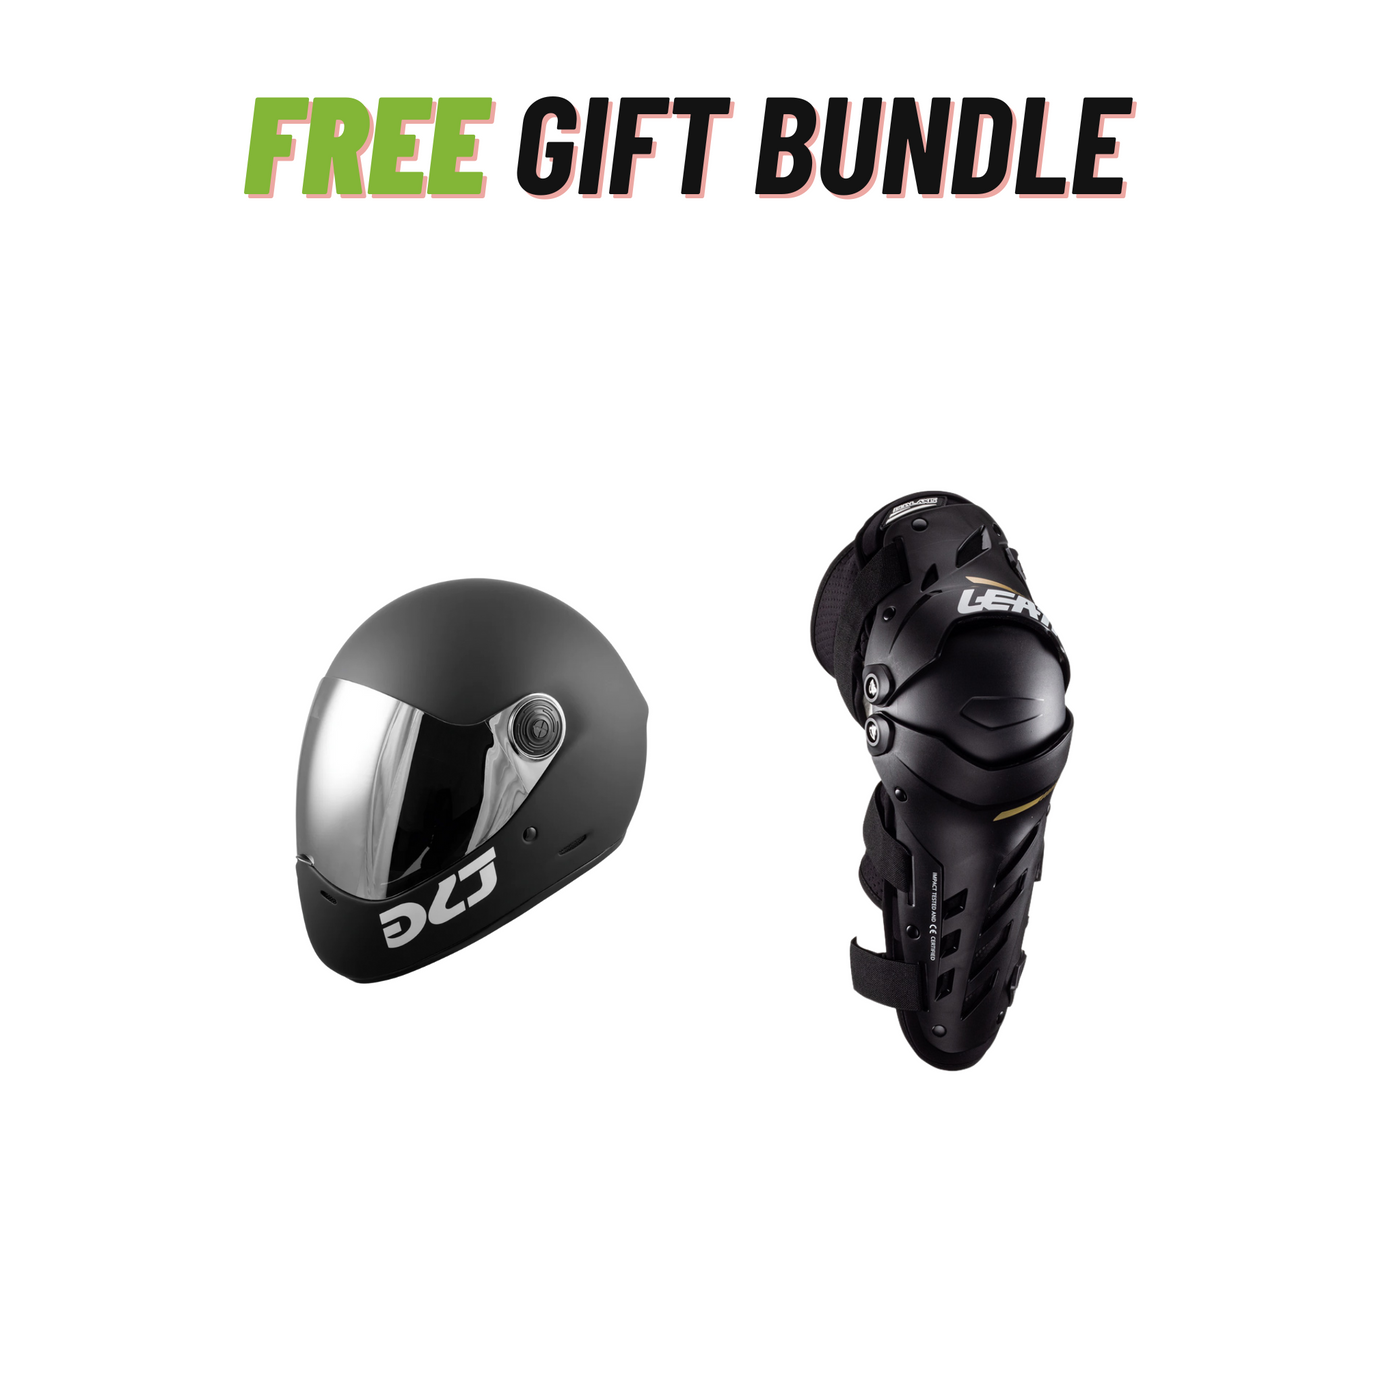 Helmet + Knee Pads Free Bundle